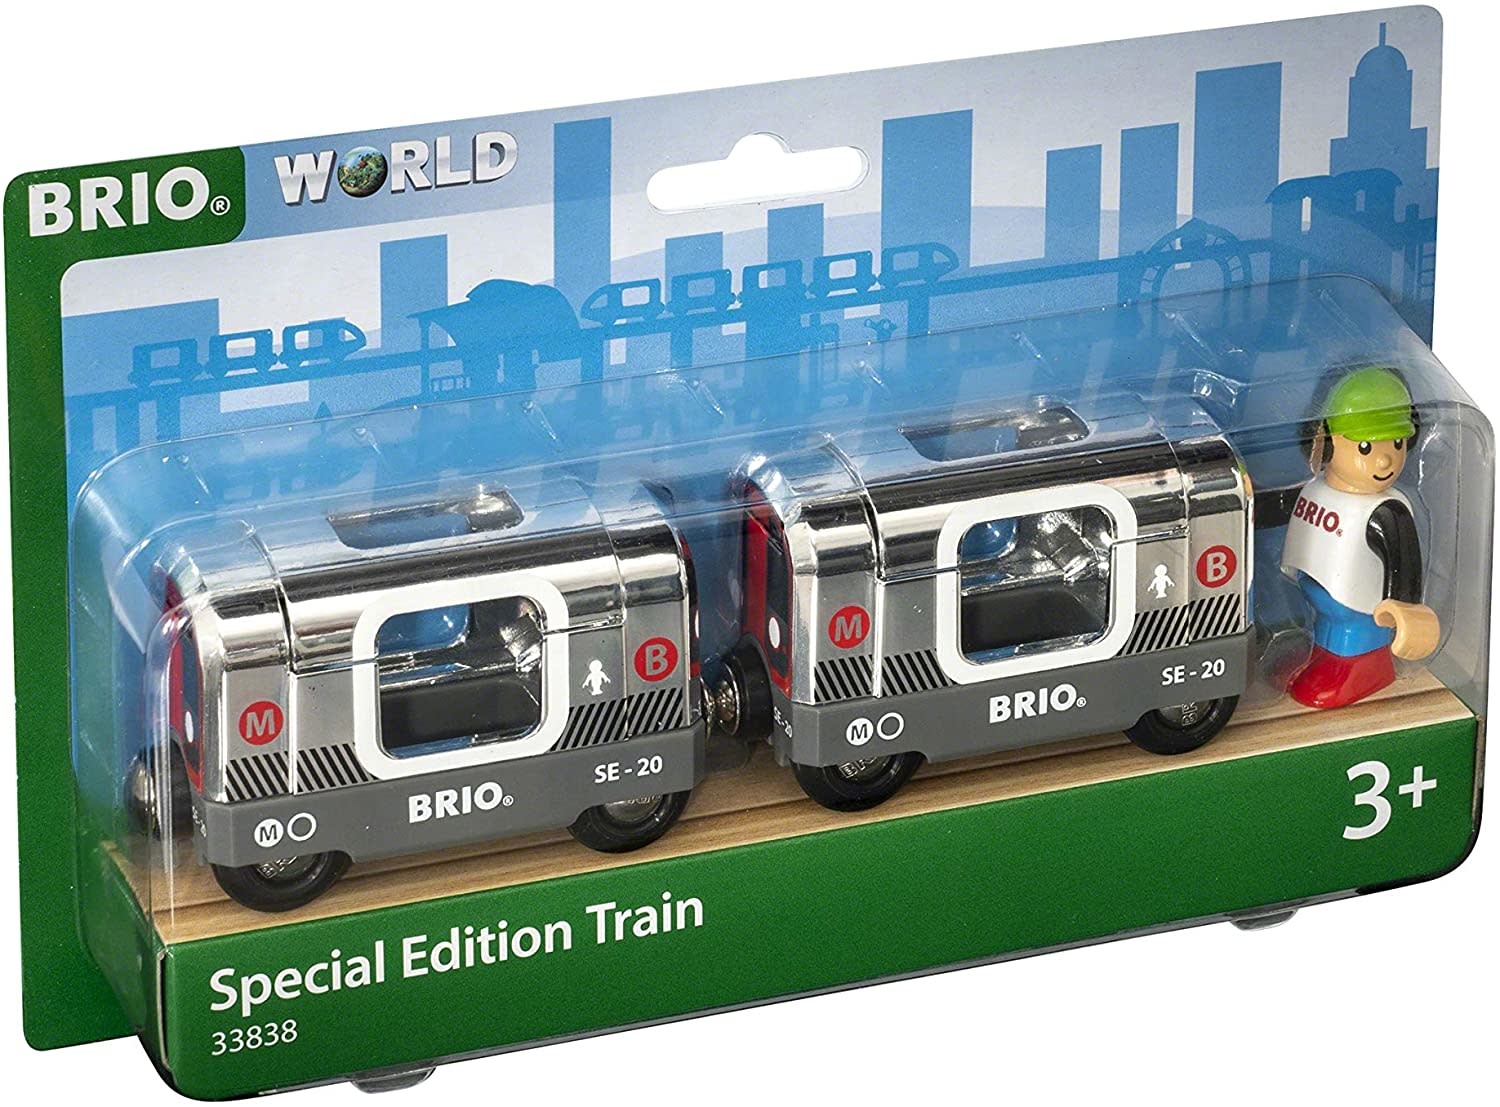 BRIO Special Edition Train 2020